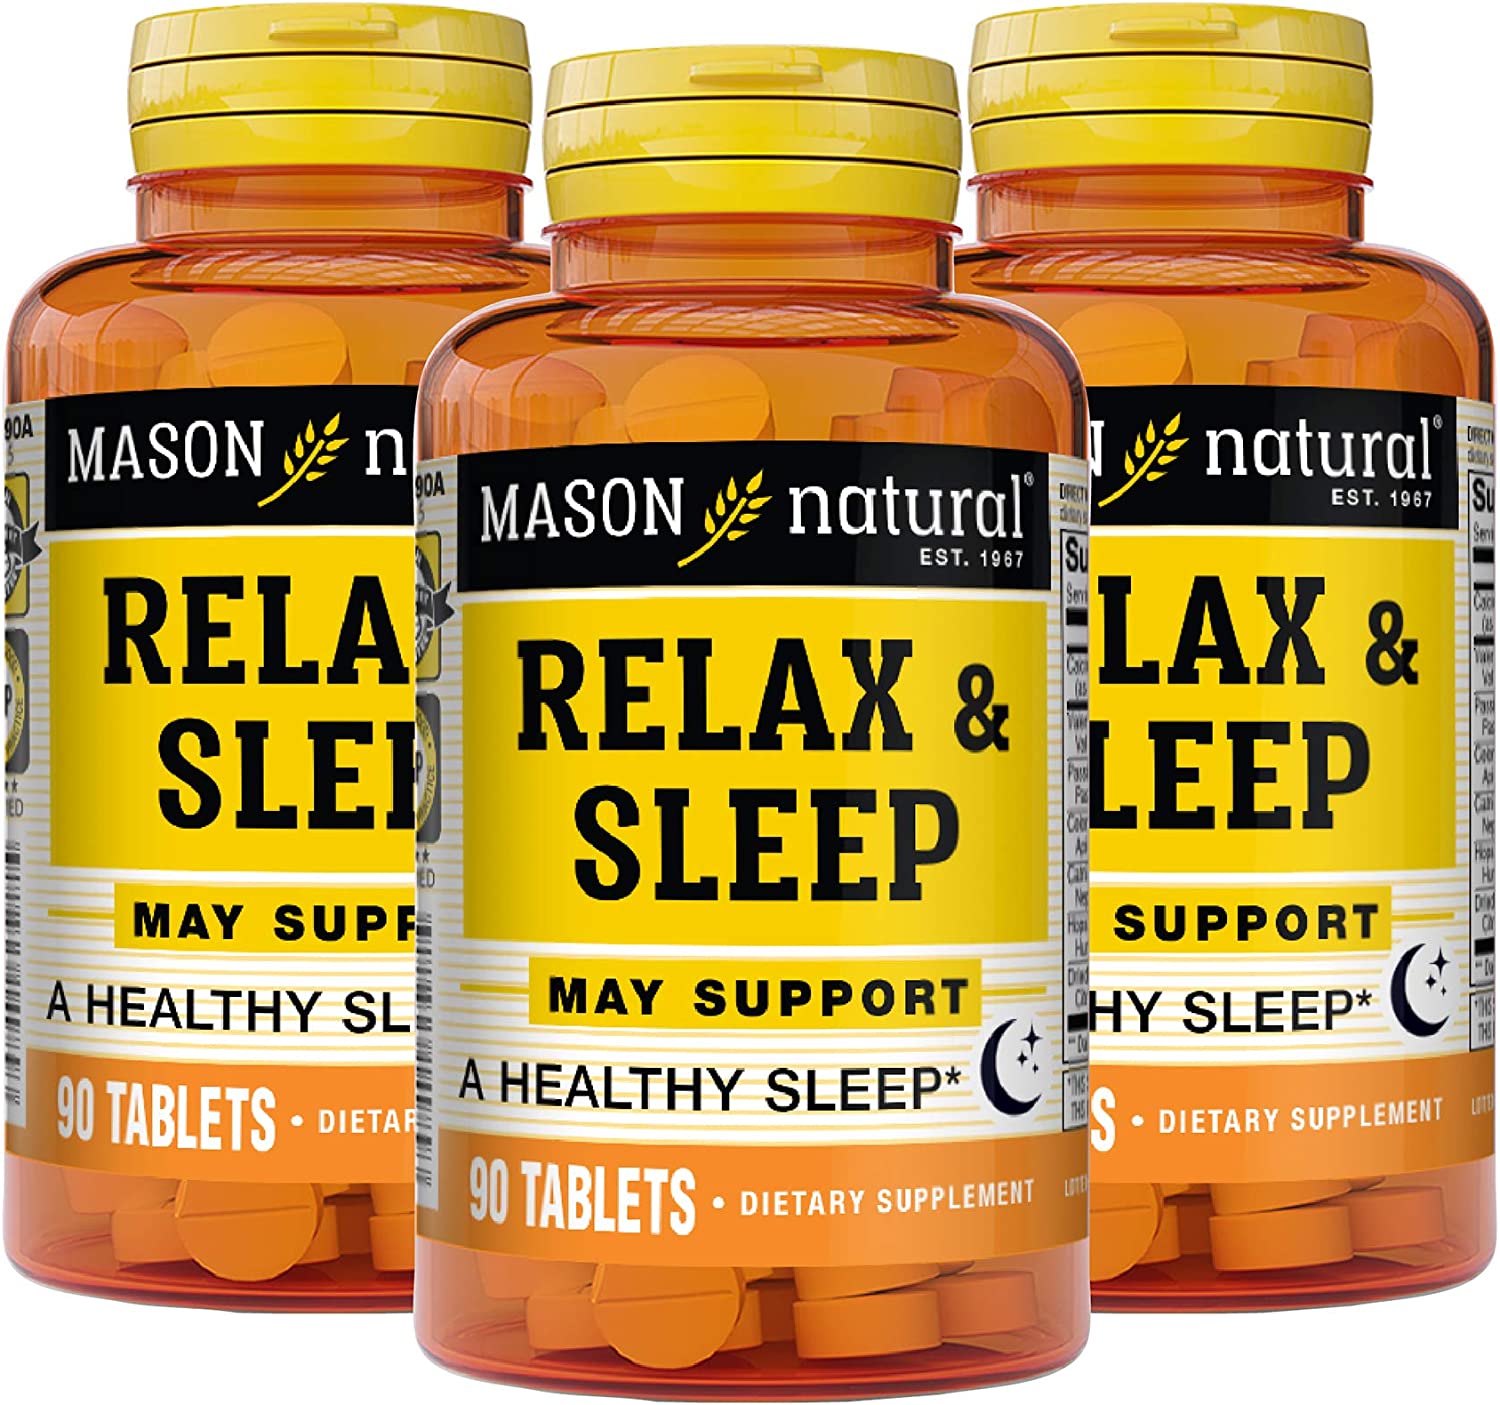 Mason Natural Relax & Sleep